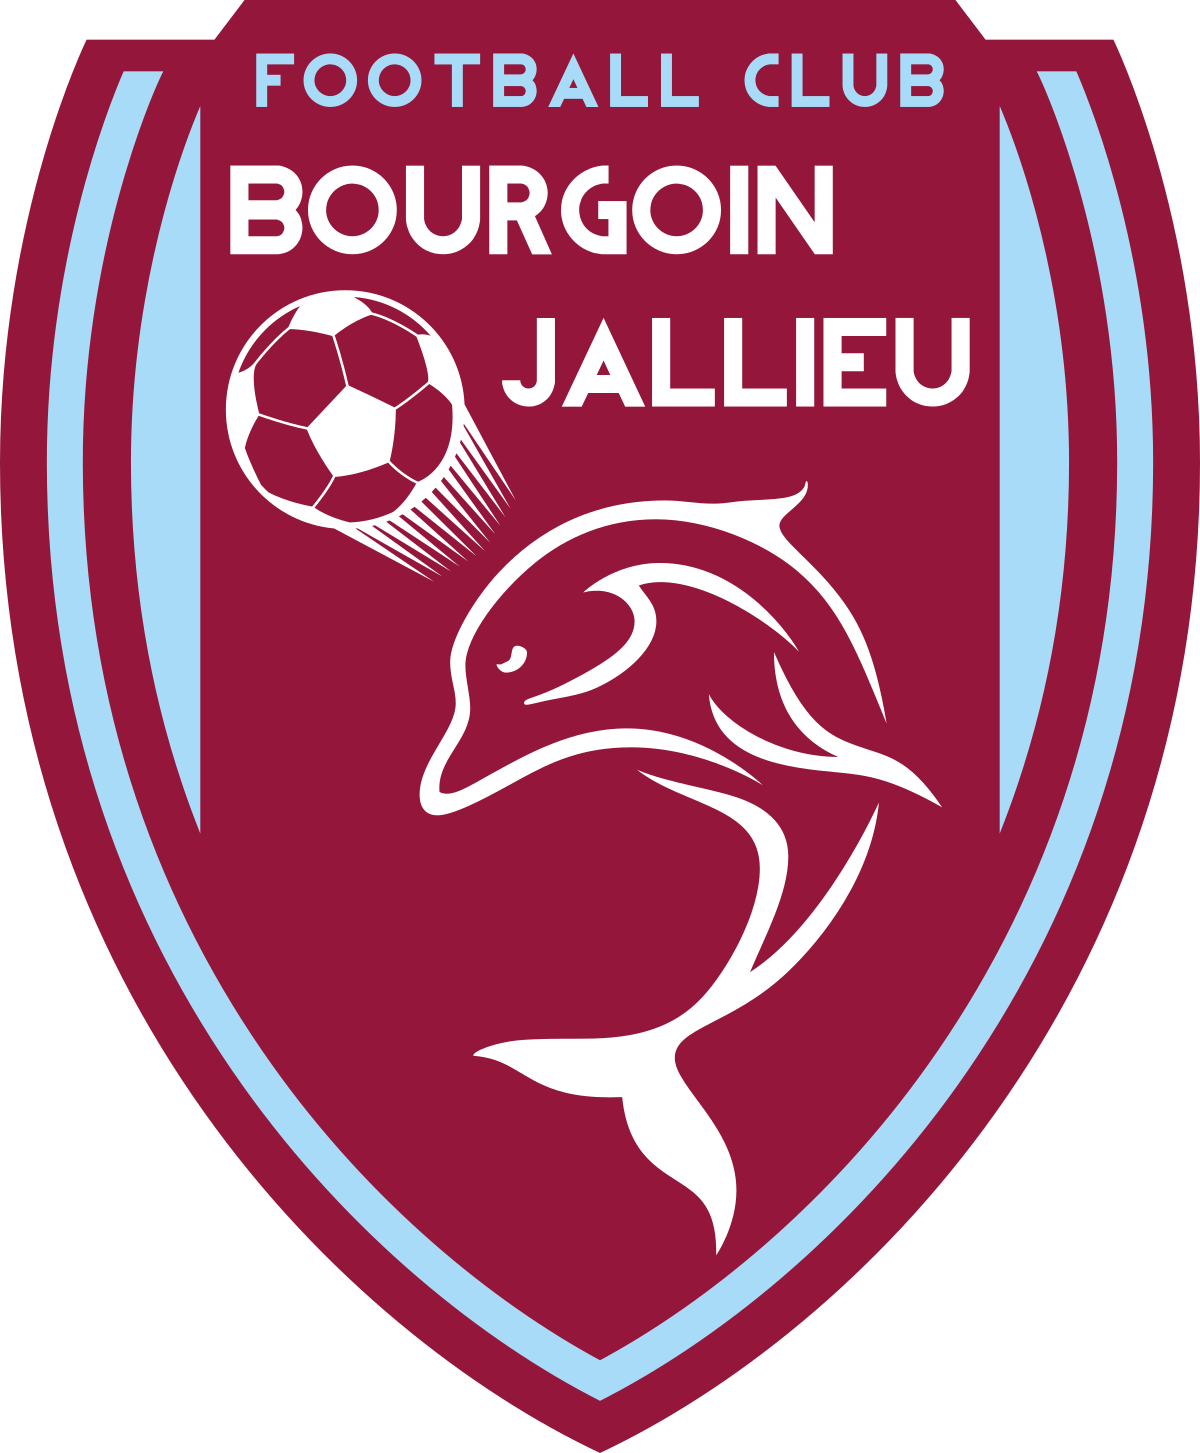 Bourgoin Jallieu team logo